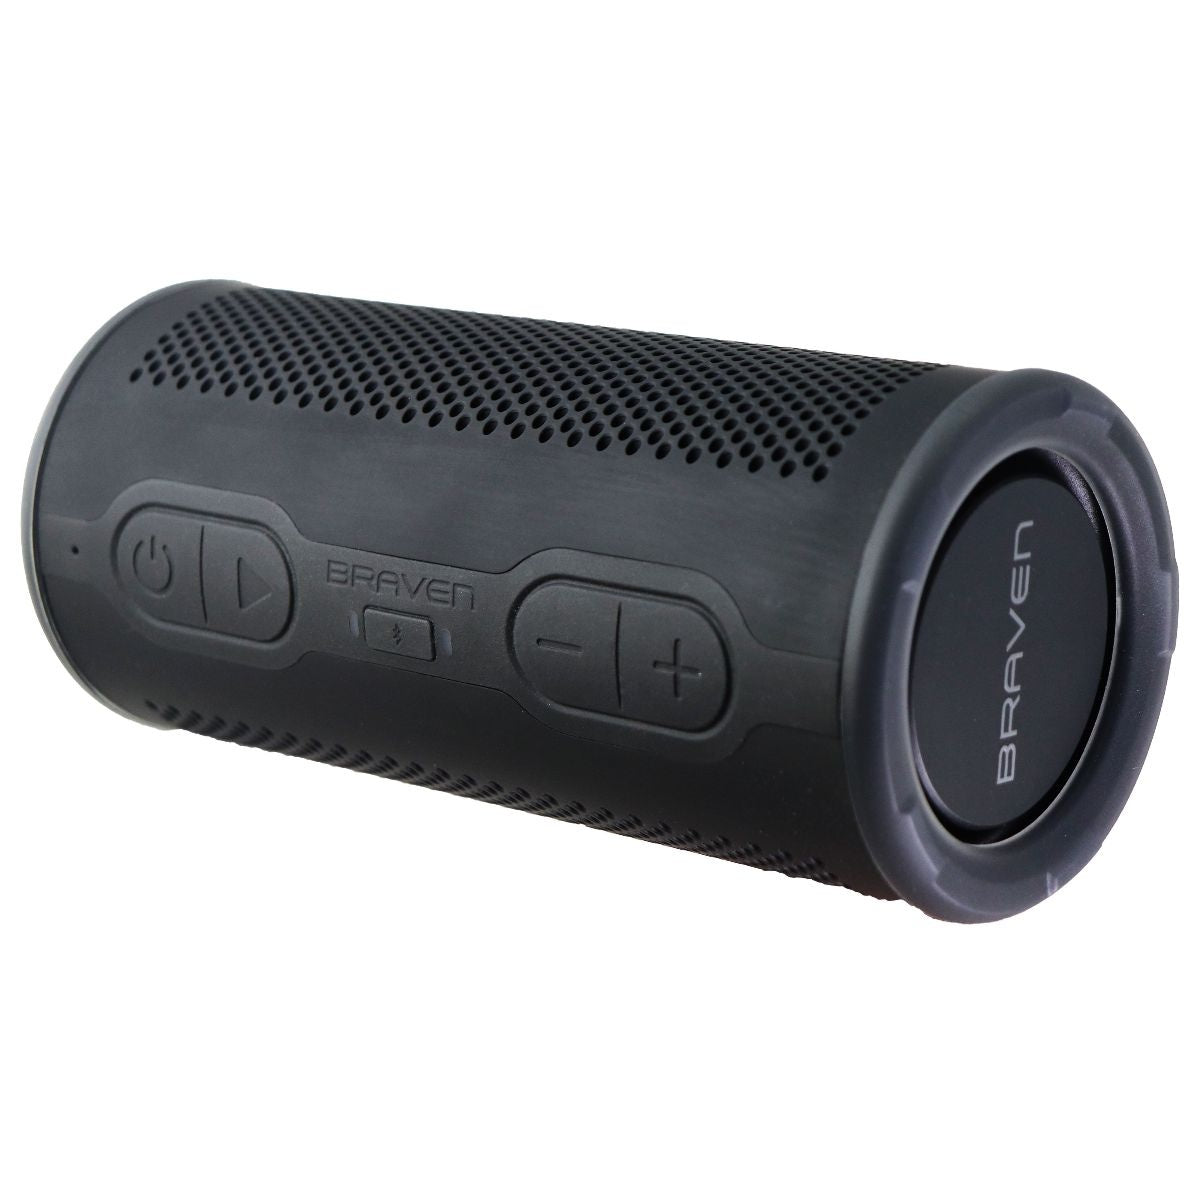 Braven BRV-360 Series Waterproof Portable 360 Degree Speaker - Black